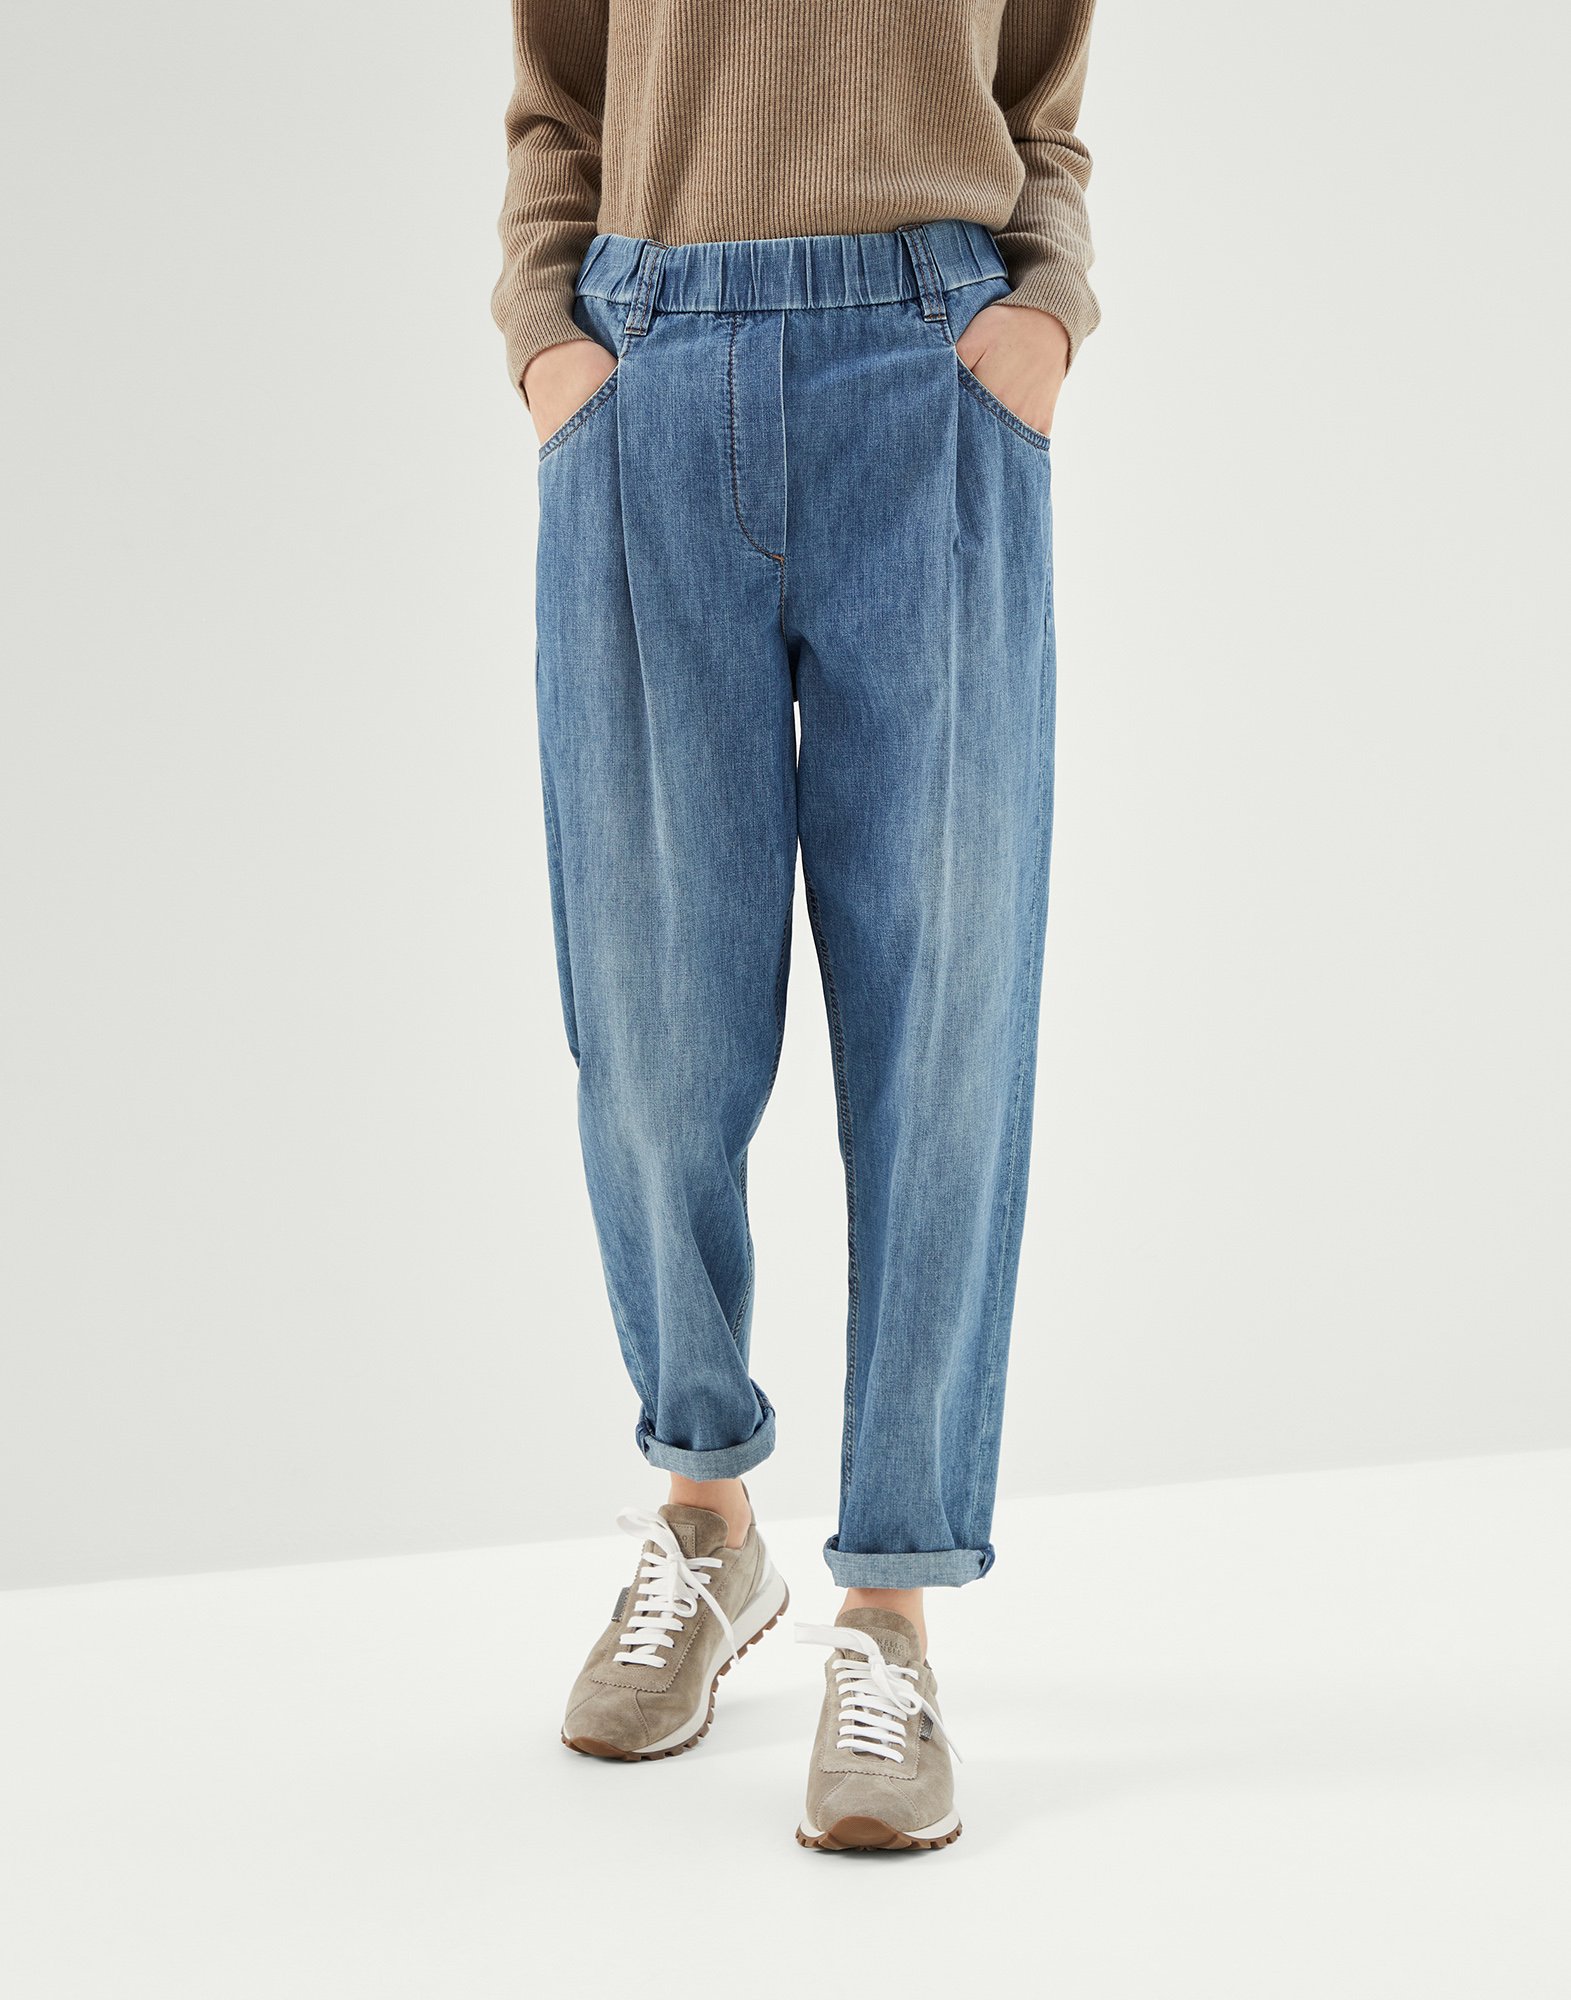 Women's jeans - Designer denim collection | Brunello Cucinelli